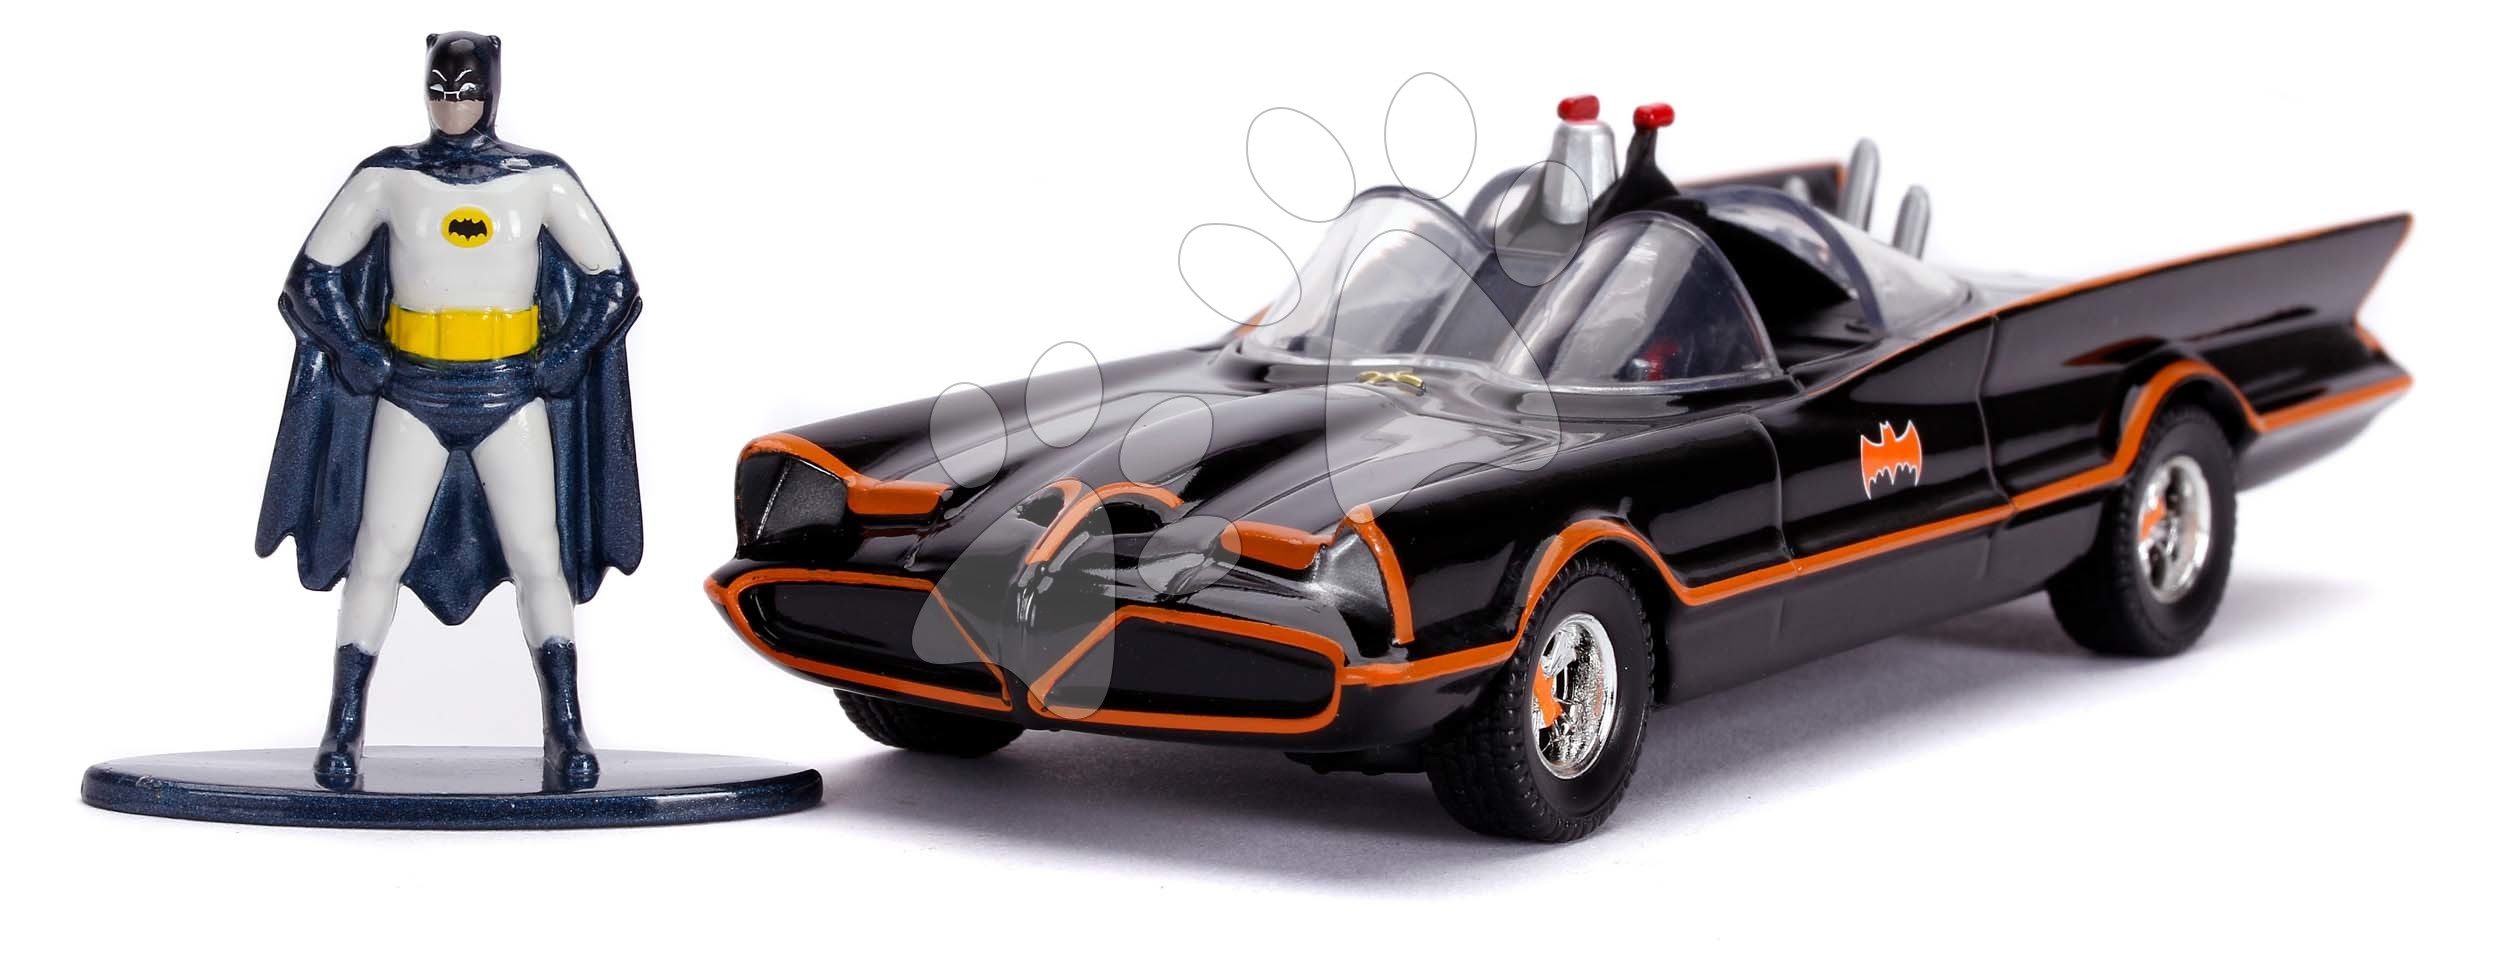 Kisautó Batman Classic Batmobil 1966 Jada fém Batman figurával hossza 12